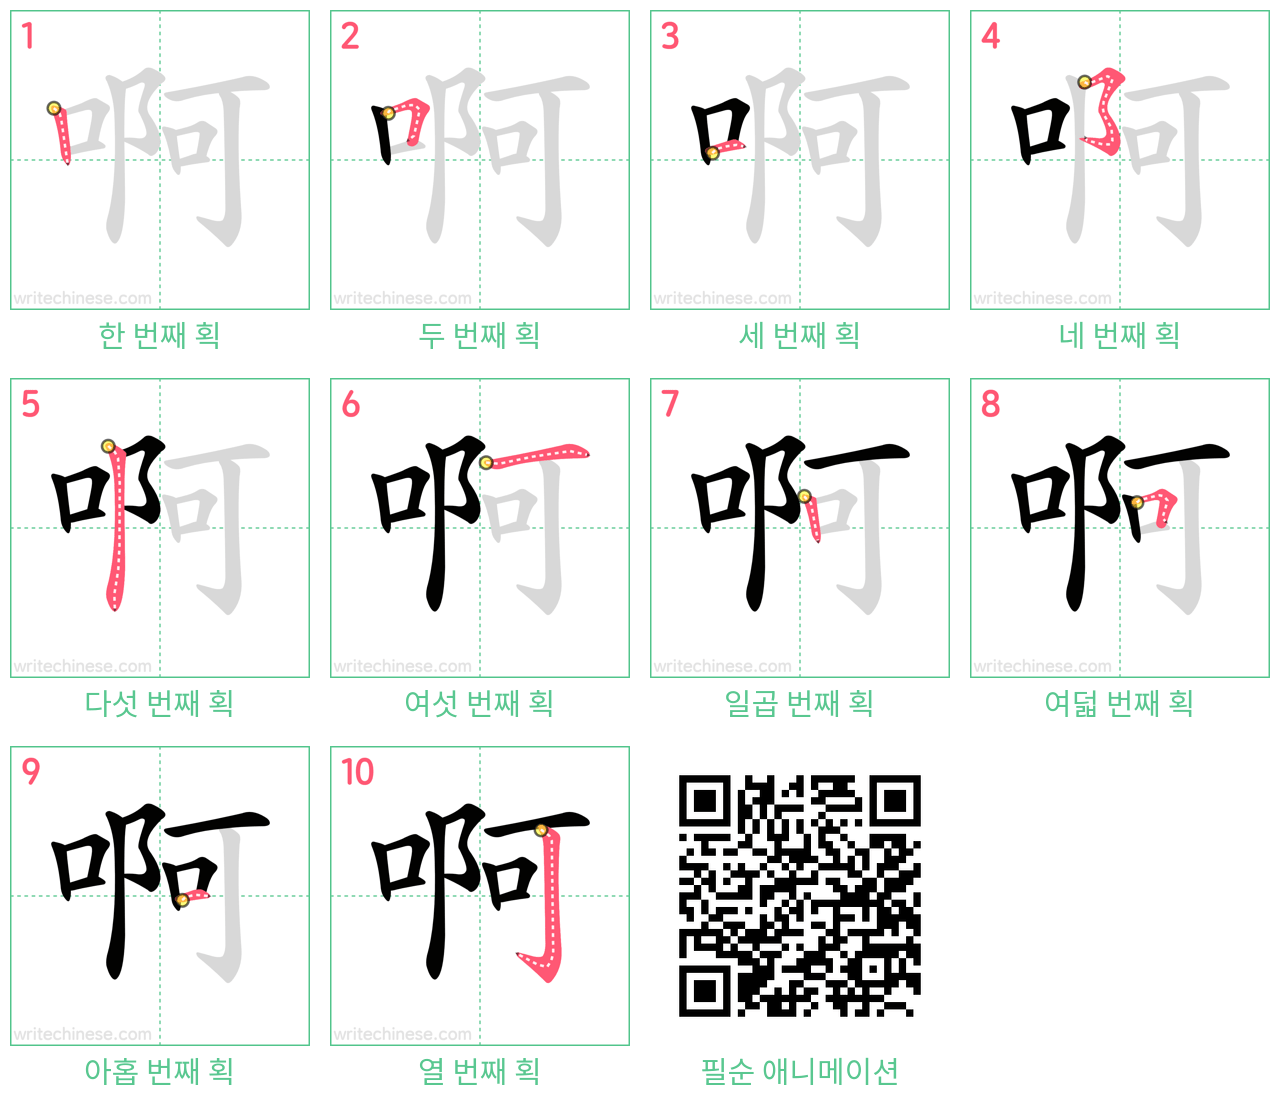 啊 step-by-step stroke order diagrams